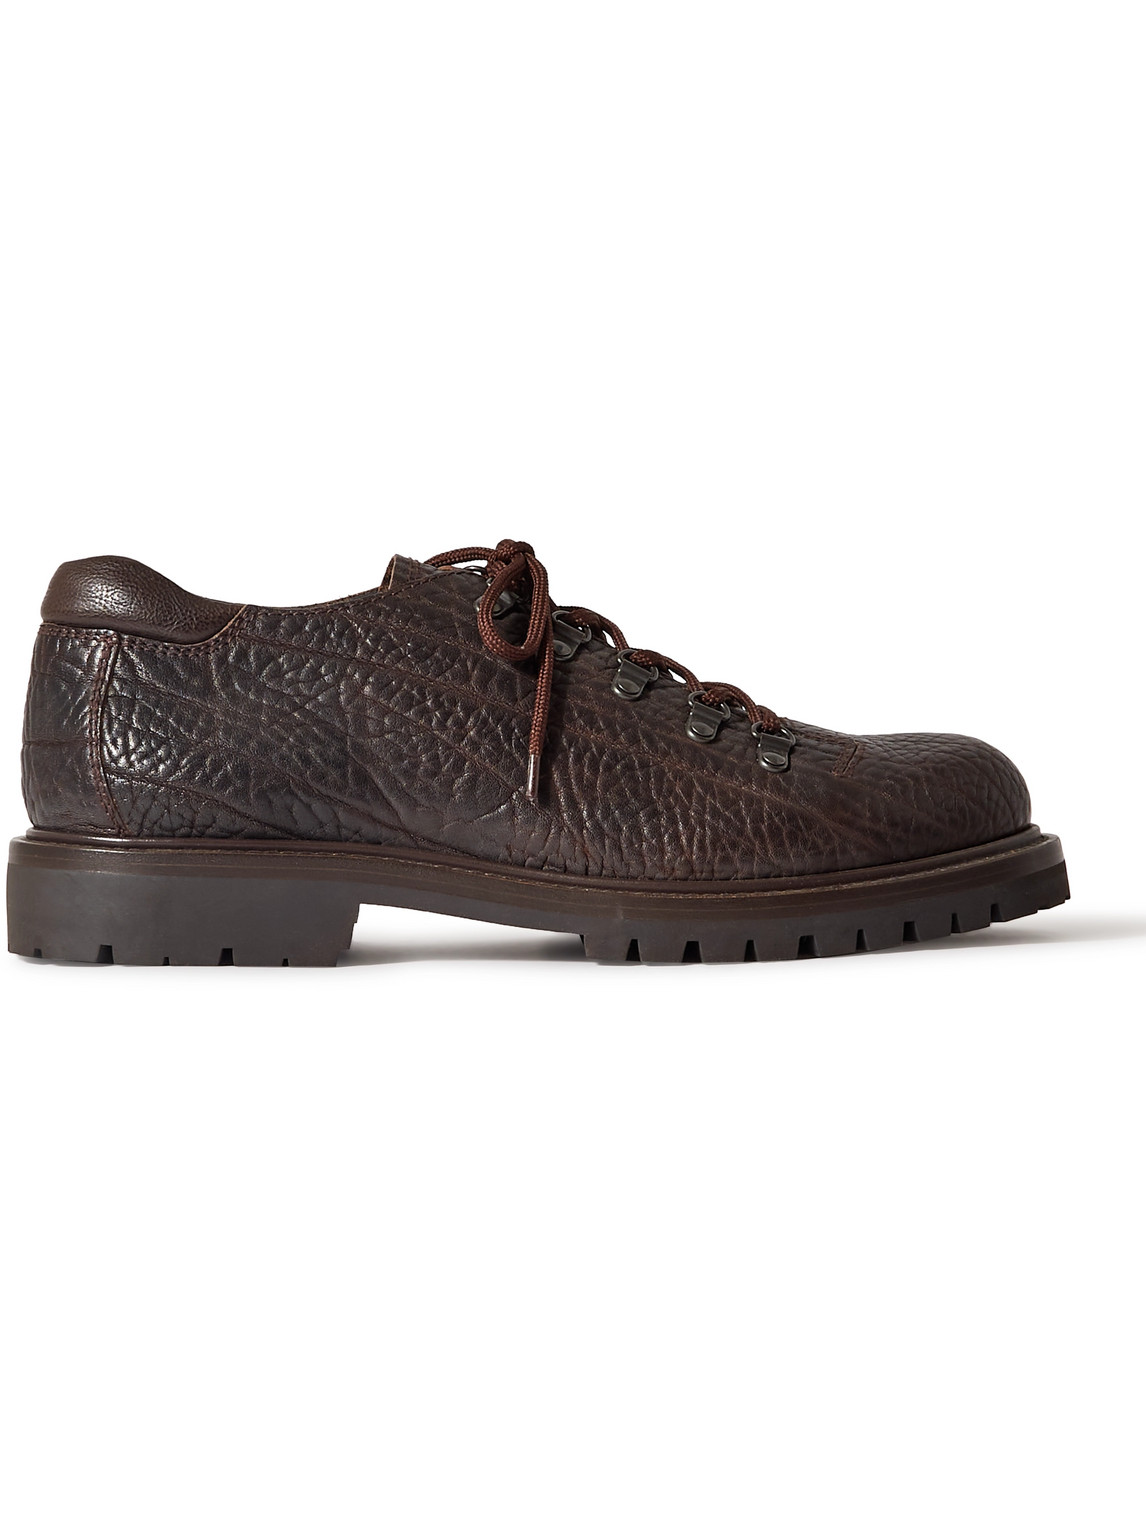 Officine Creative - Full-Grain Leather Derby Shoes - Men - Brown - EU 43 von Officine Creative